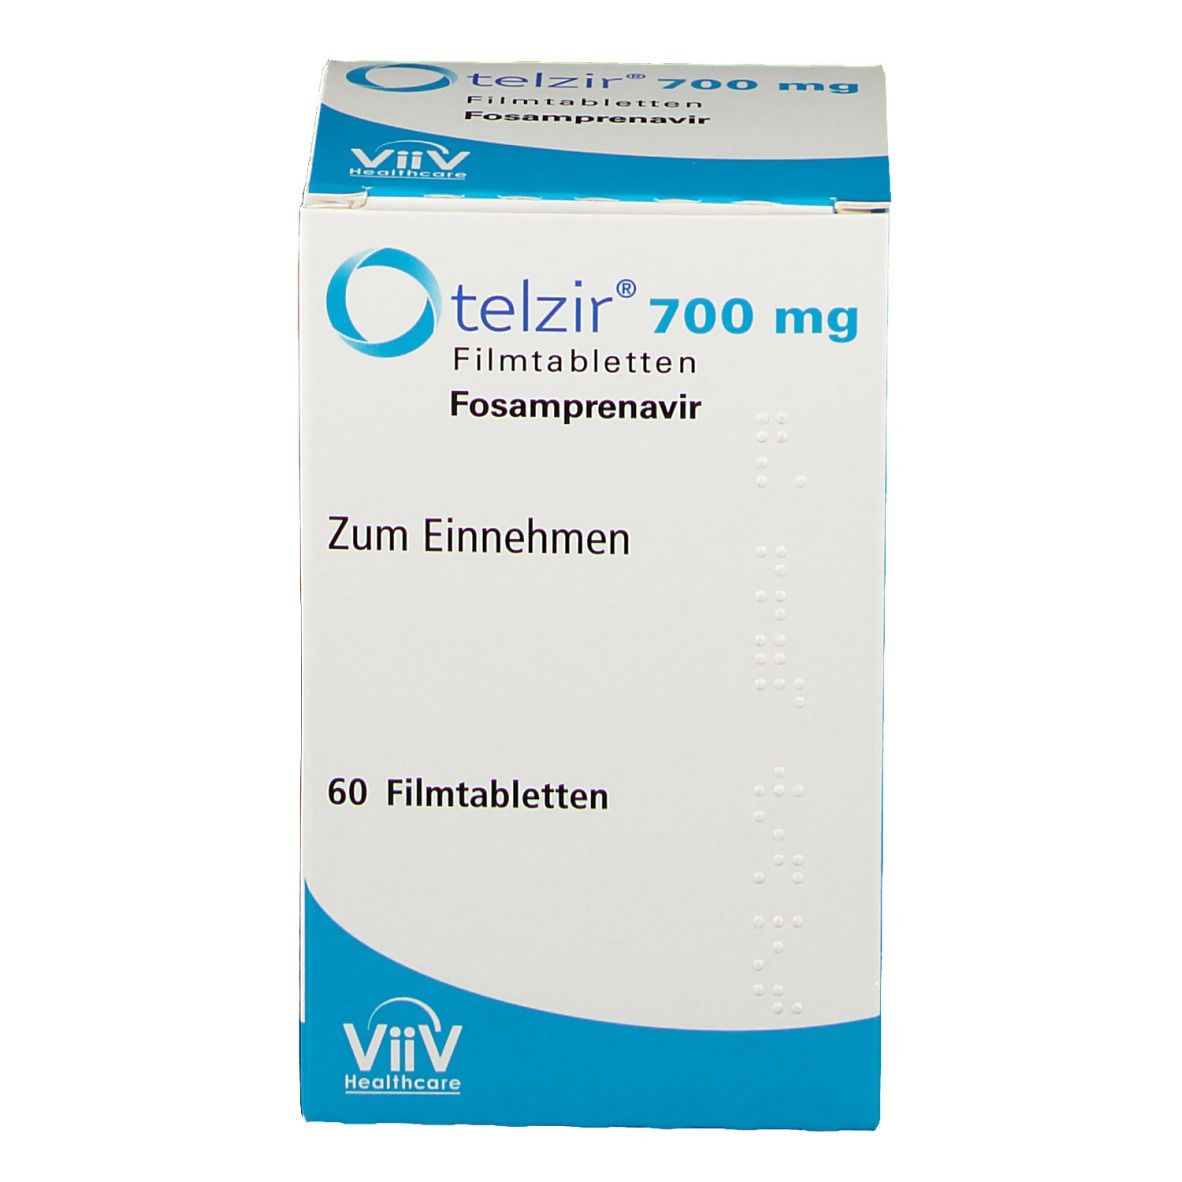 telzir® 700 mg